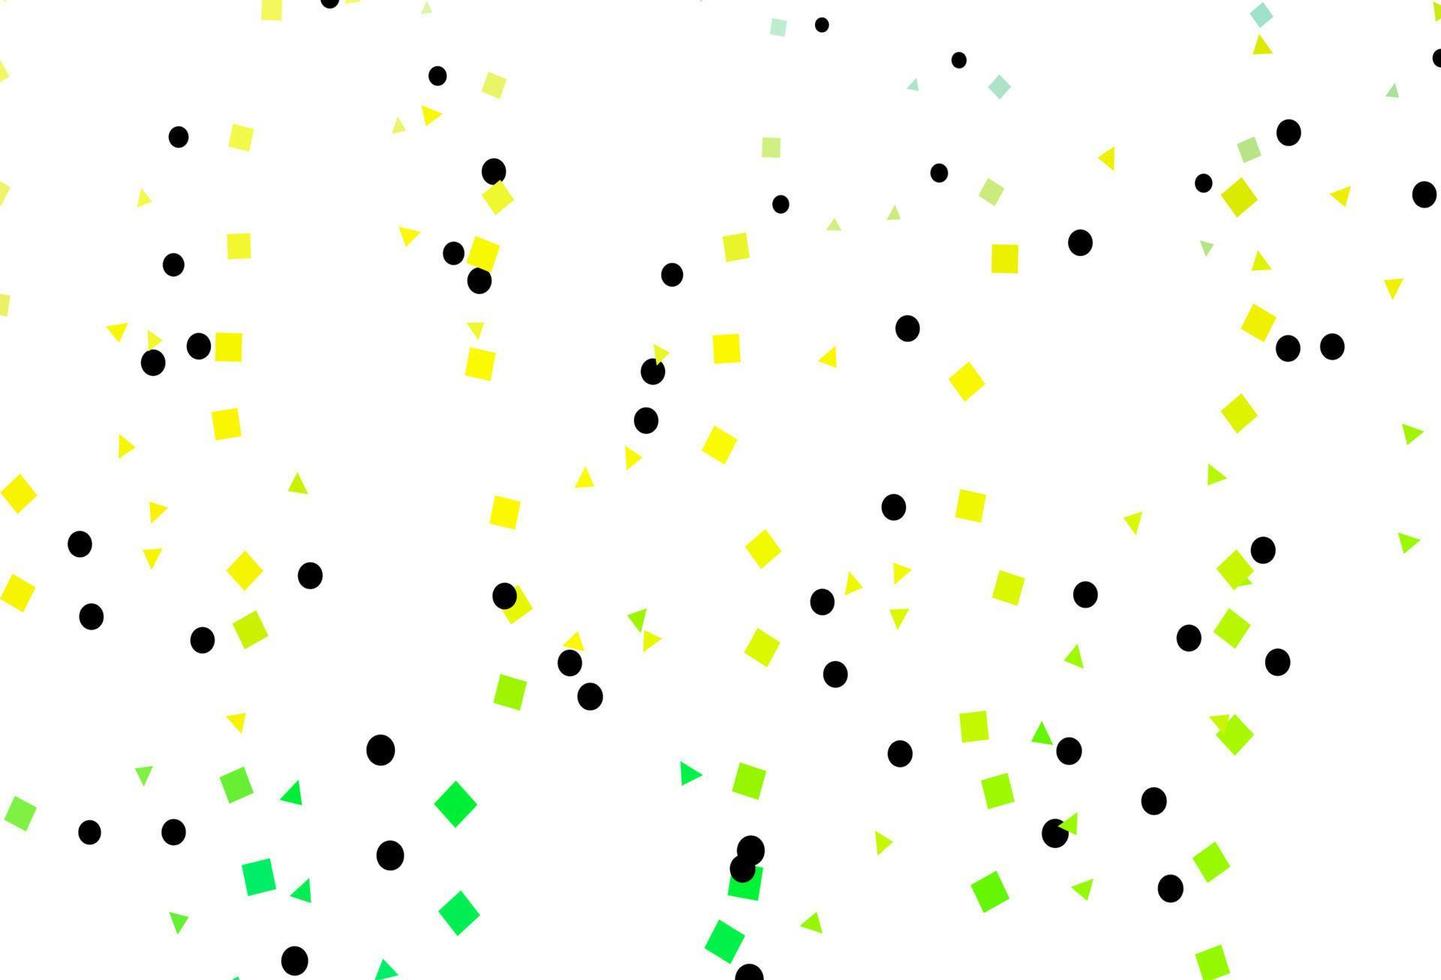 ljusgrön, gul vektormall med kristaller, cirklar, rutor. vektor